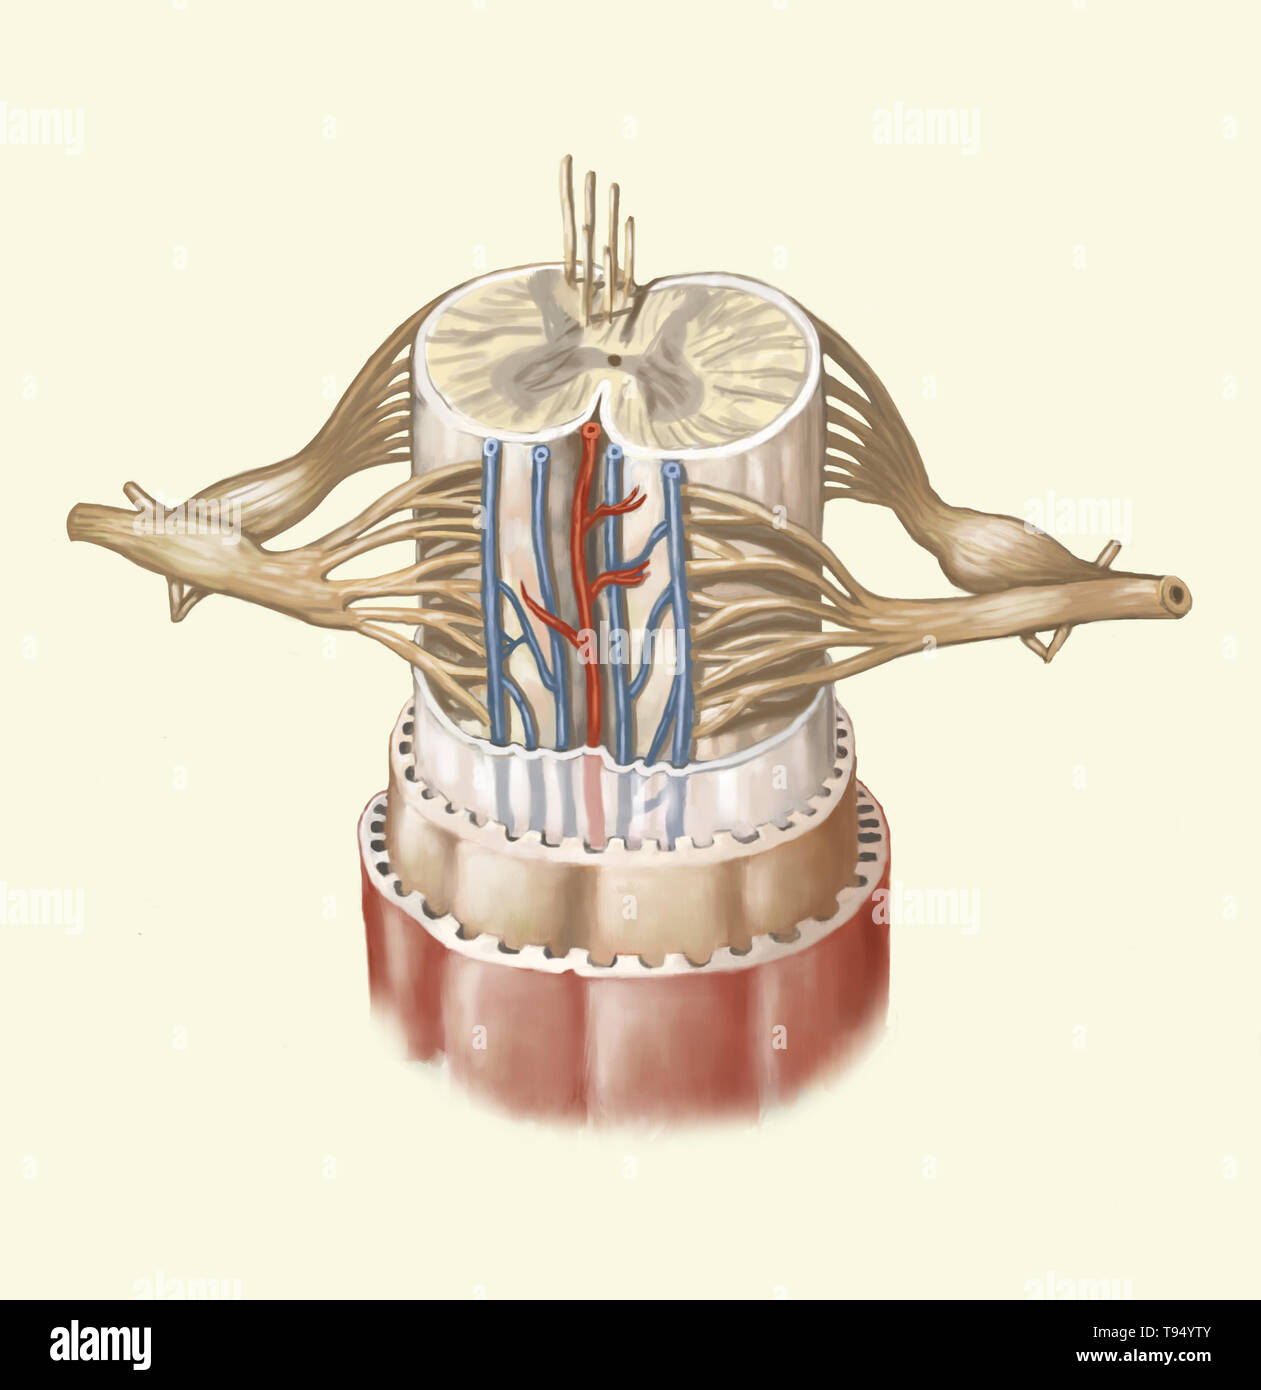 Das Rückenmark wird durch eine Schnur von nervengewebe mehr als 16 Zoll (40 cm) in der Länge im Wirbelkanal befindet, innerhalb der Wirbelsäule gebildet. Es erstreckt sich von der Wirbelsäule Lampe zum zweiten Lendenwirbel und wird durch eine Sammlung von nervösen Fasern verlängert, die Cauda equina. Komponiert von motorischen und sensorischen Neuronen, die das Rückenmark sorgt für die Übertragung von Nachrichten zwischen dem spinalen Nerven und Gehirn, zusätzlich zum Sein ein Reflex. Stockfoto